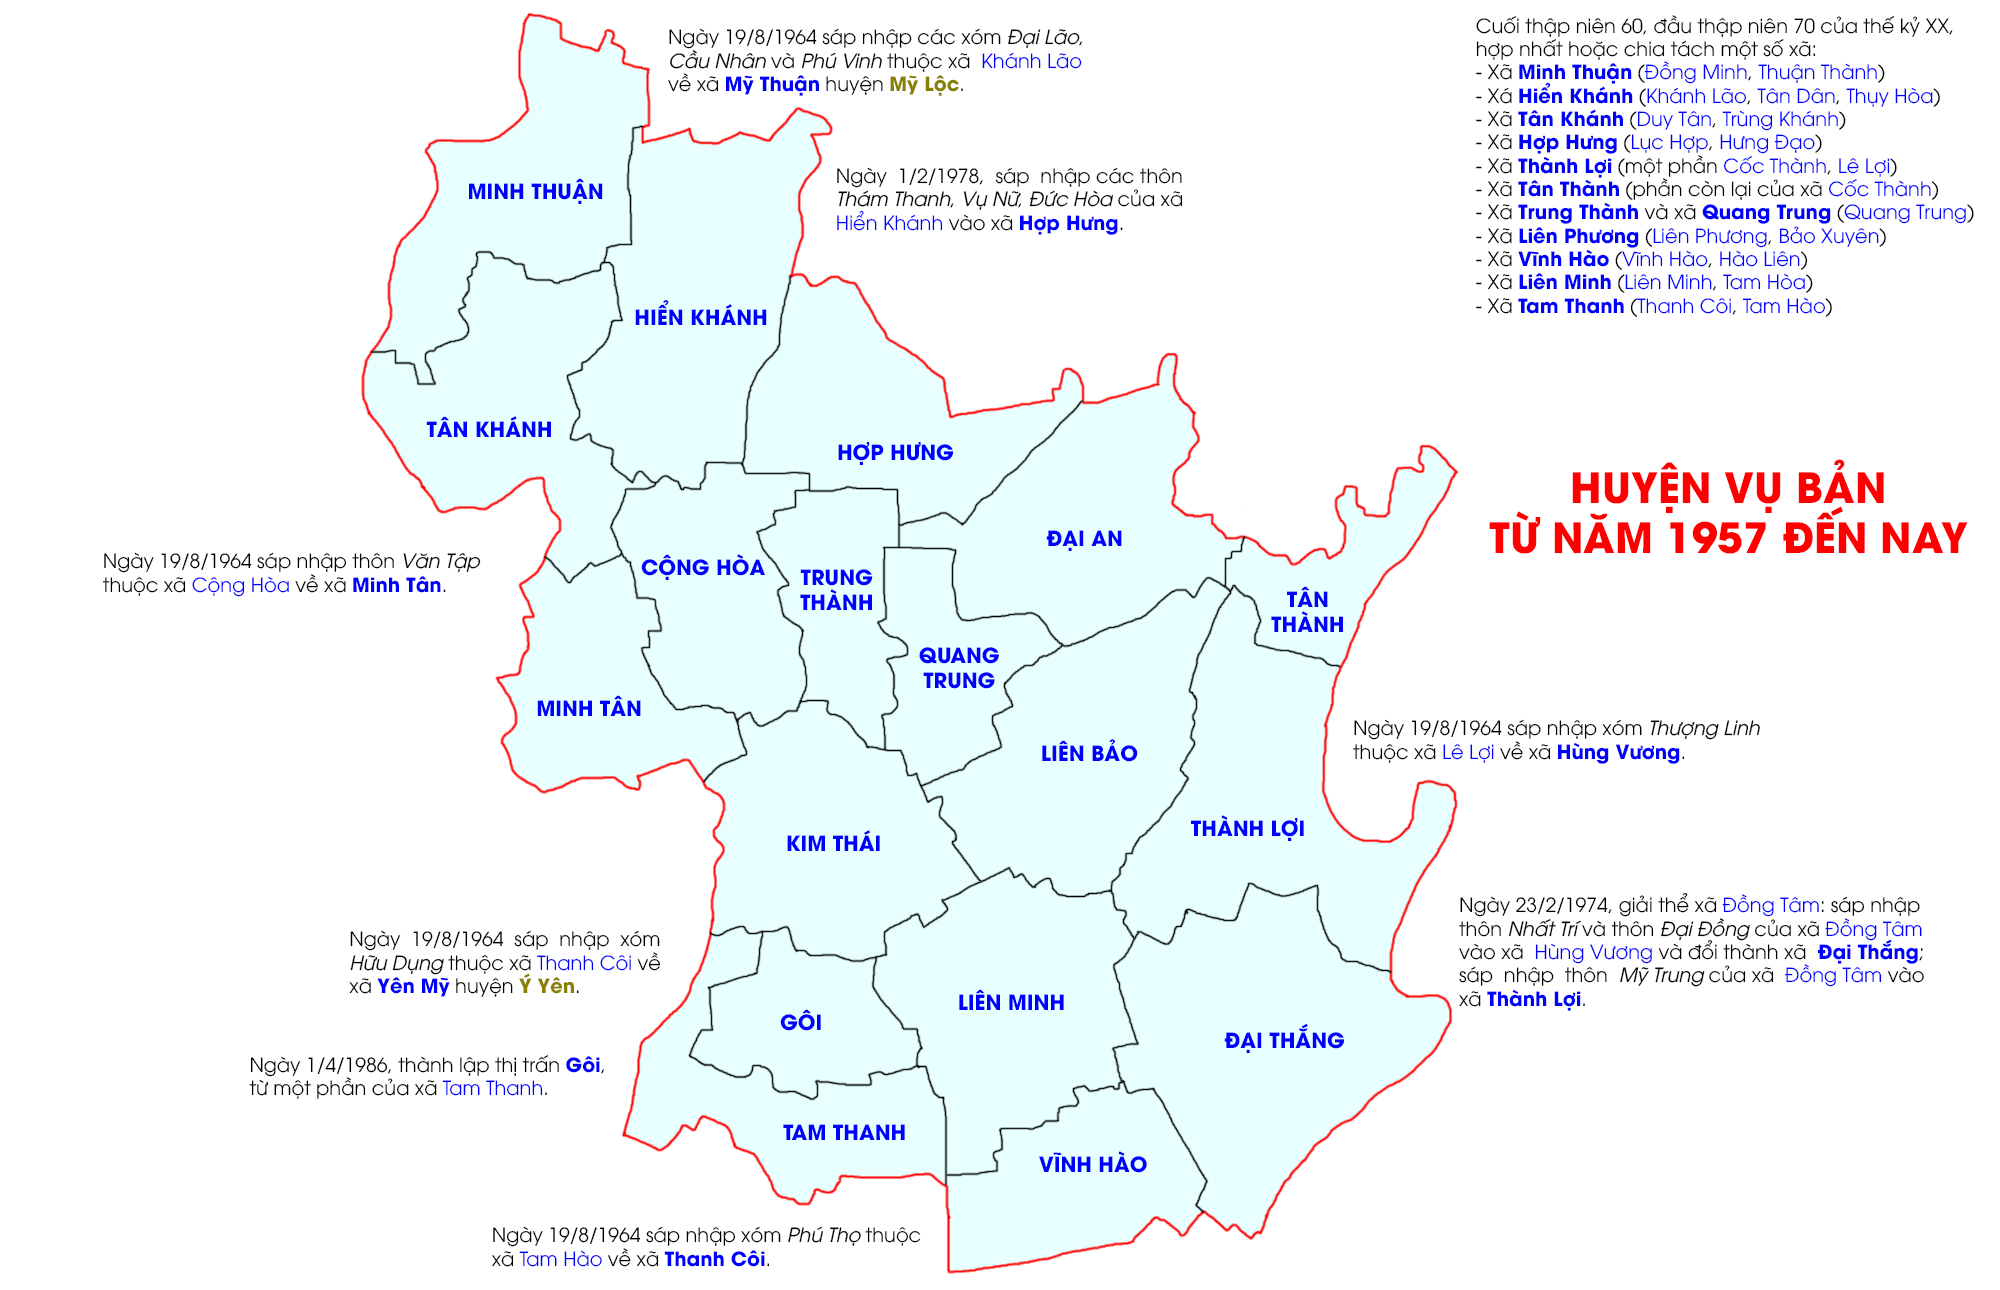 Huyện Vụ Bản từ năm 1957 đến nay